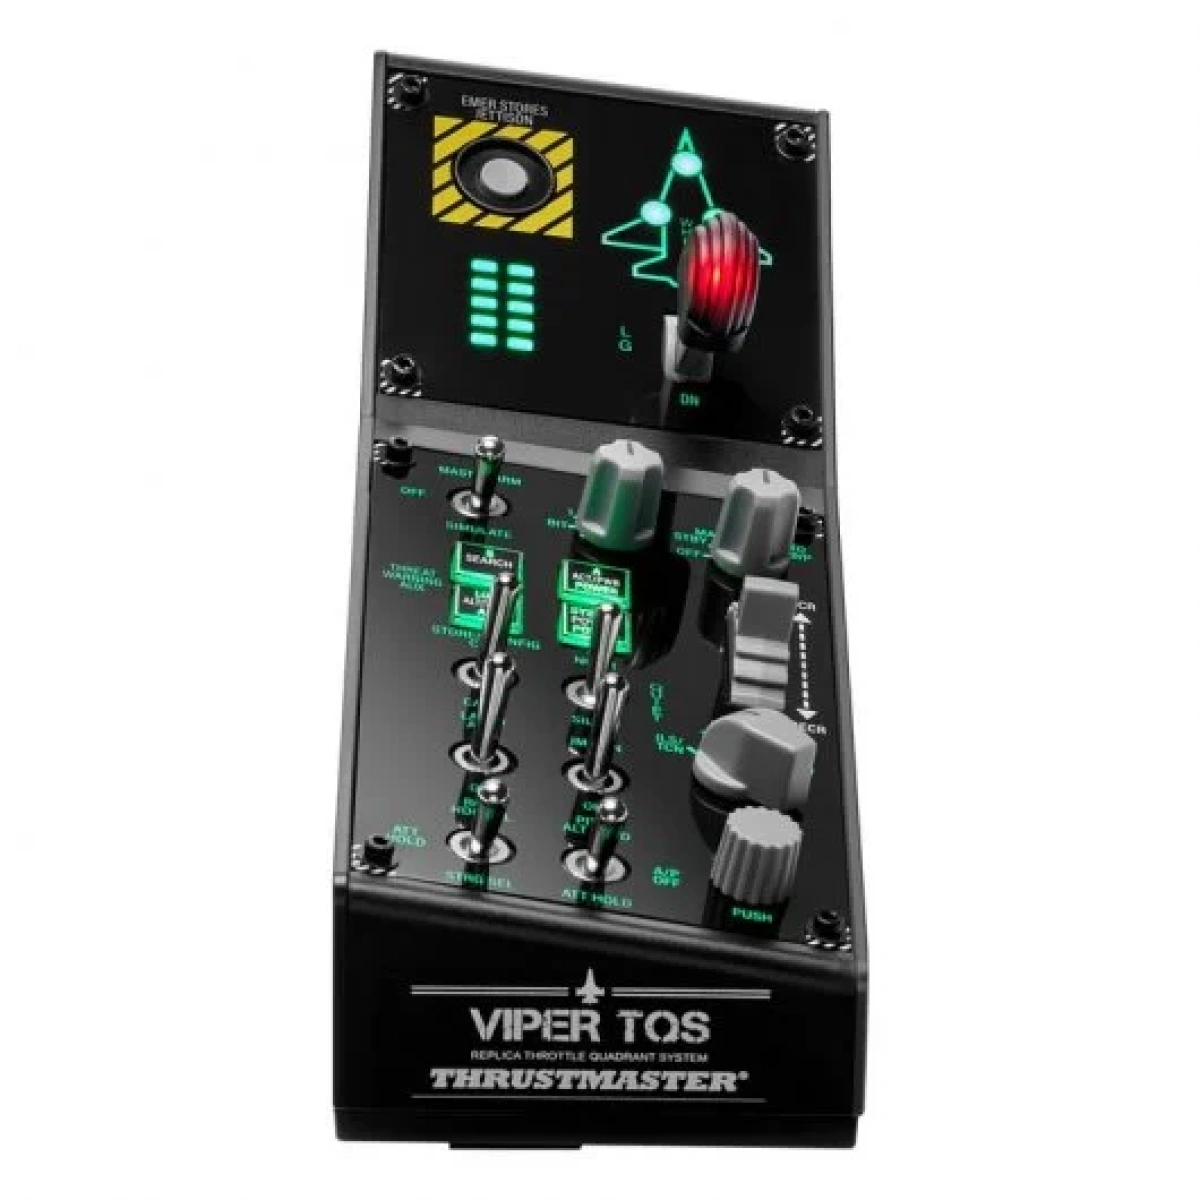 24 thrustmaster viper panel controles de cabina del viper para pc comprar